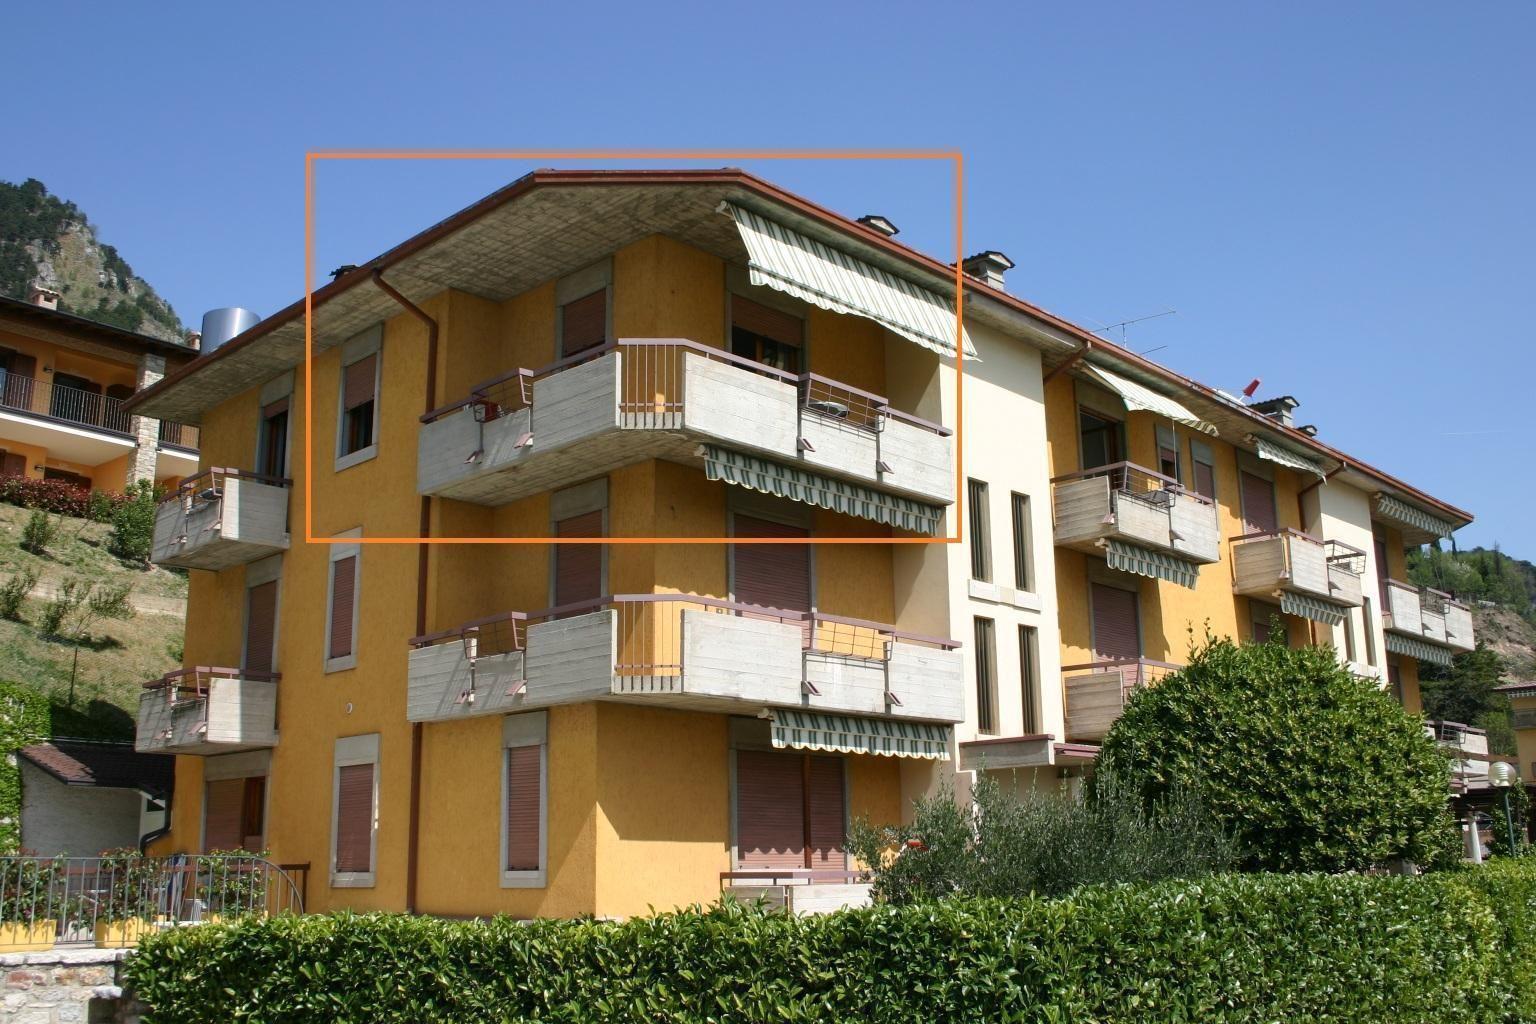 Appartement in der zweiten Etage mit Balkon   Lombardei